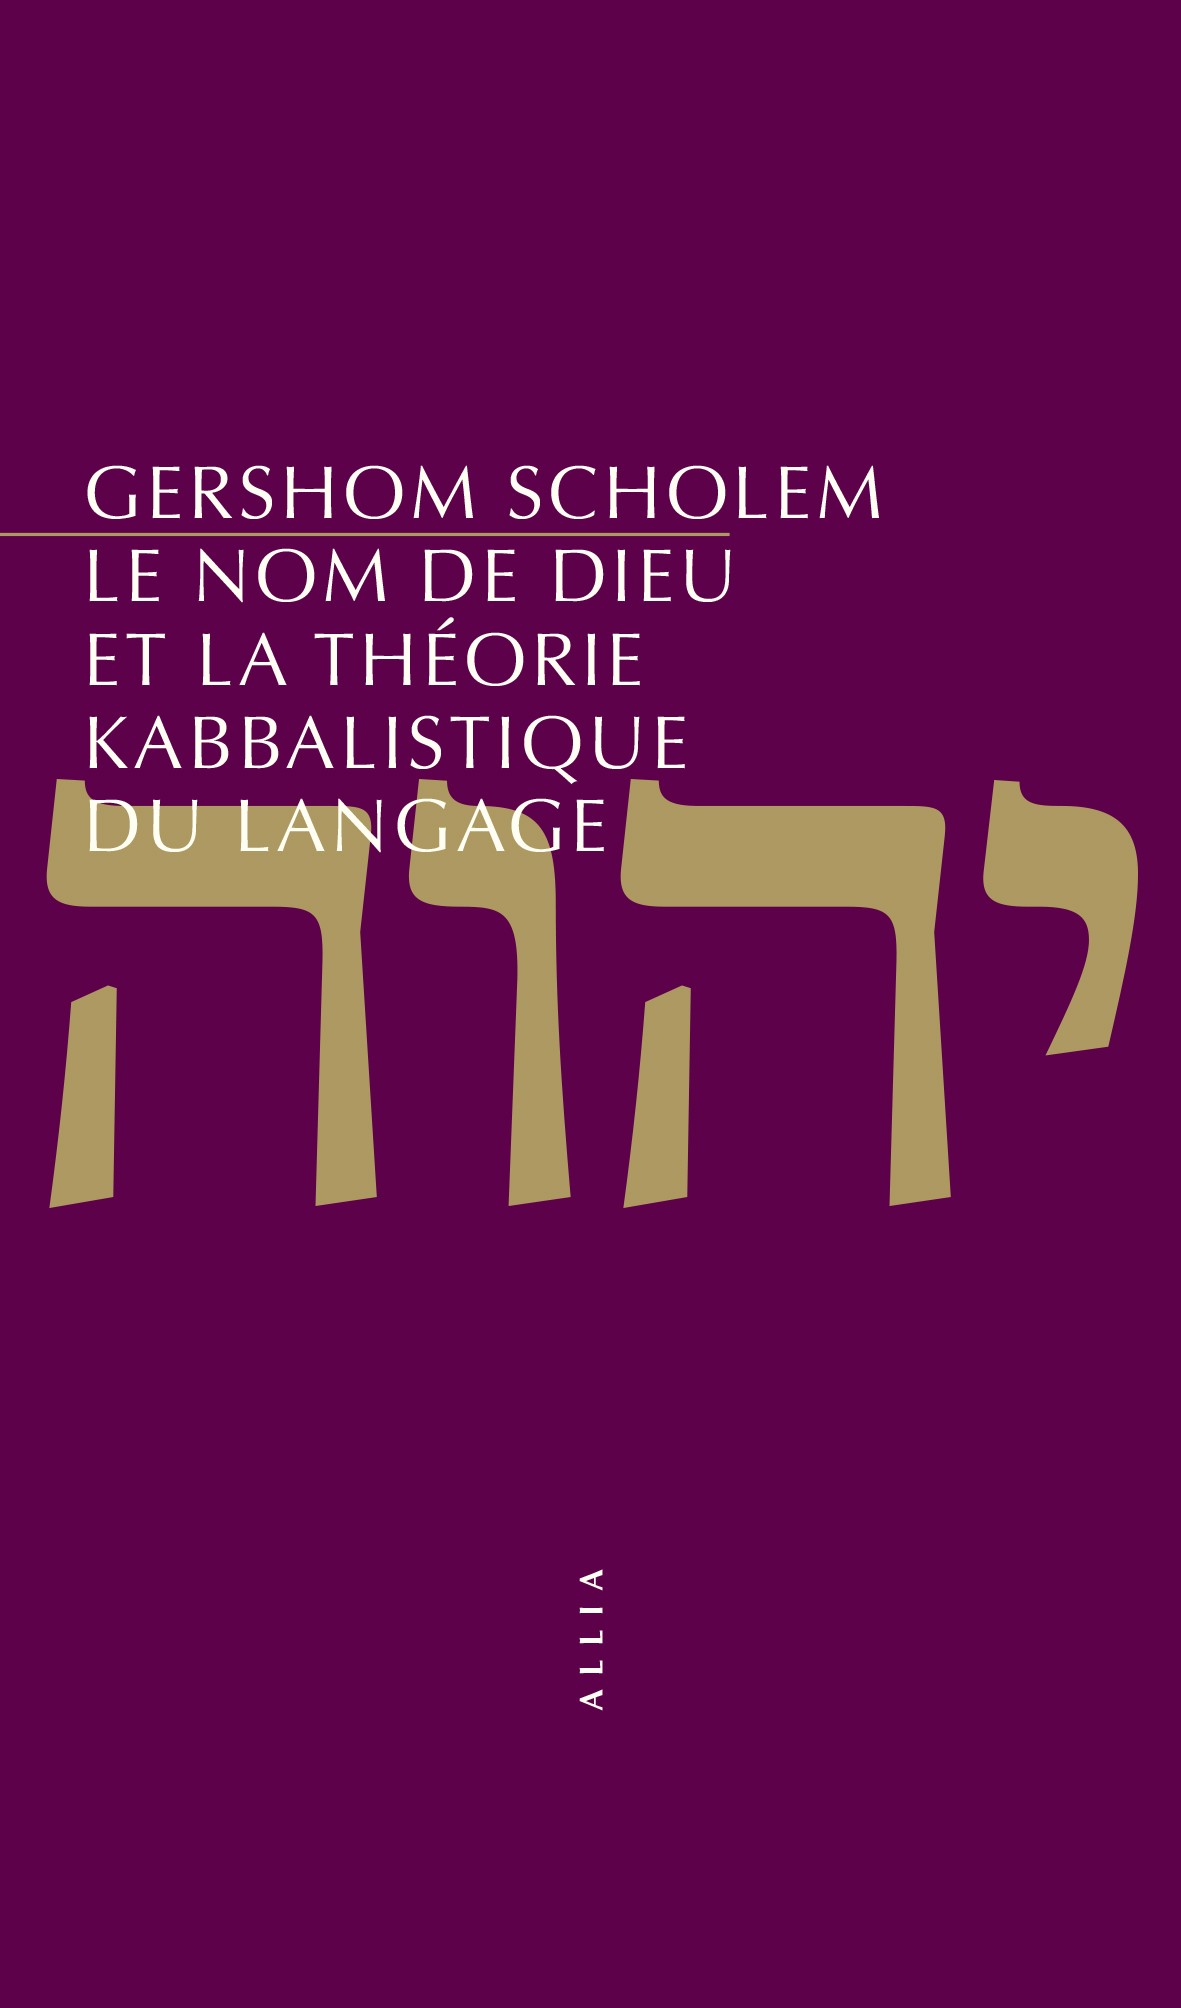 Le Nom de Dieu et la théorie kabbalistique du langage